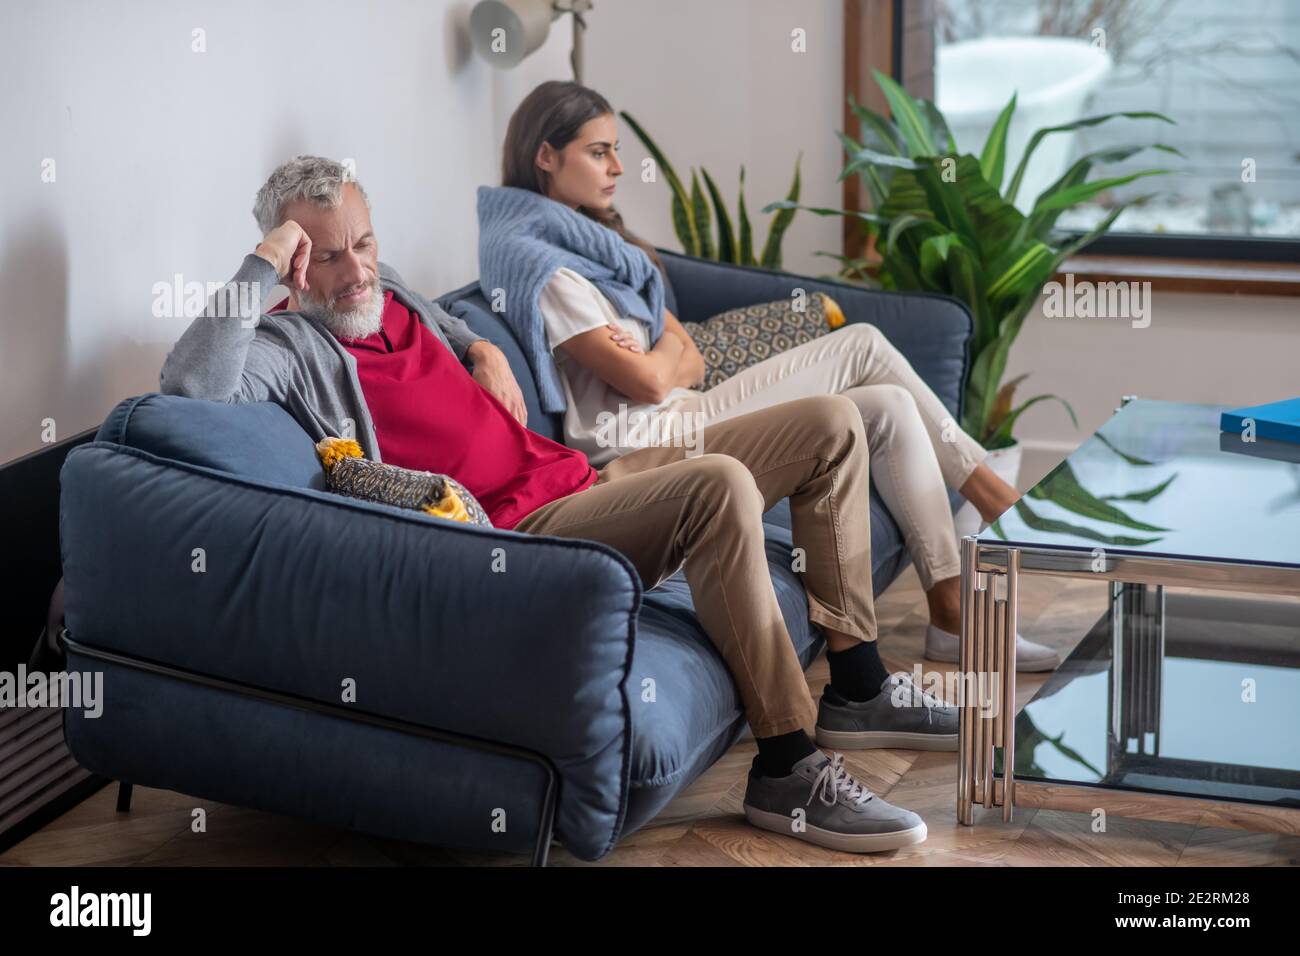 Un couple agacé assis sur un canapé après un argument Banque D'Images